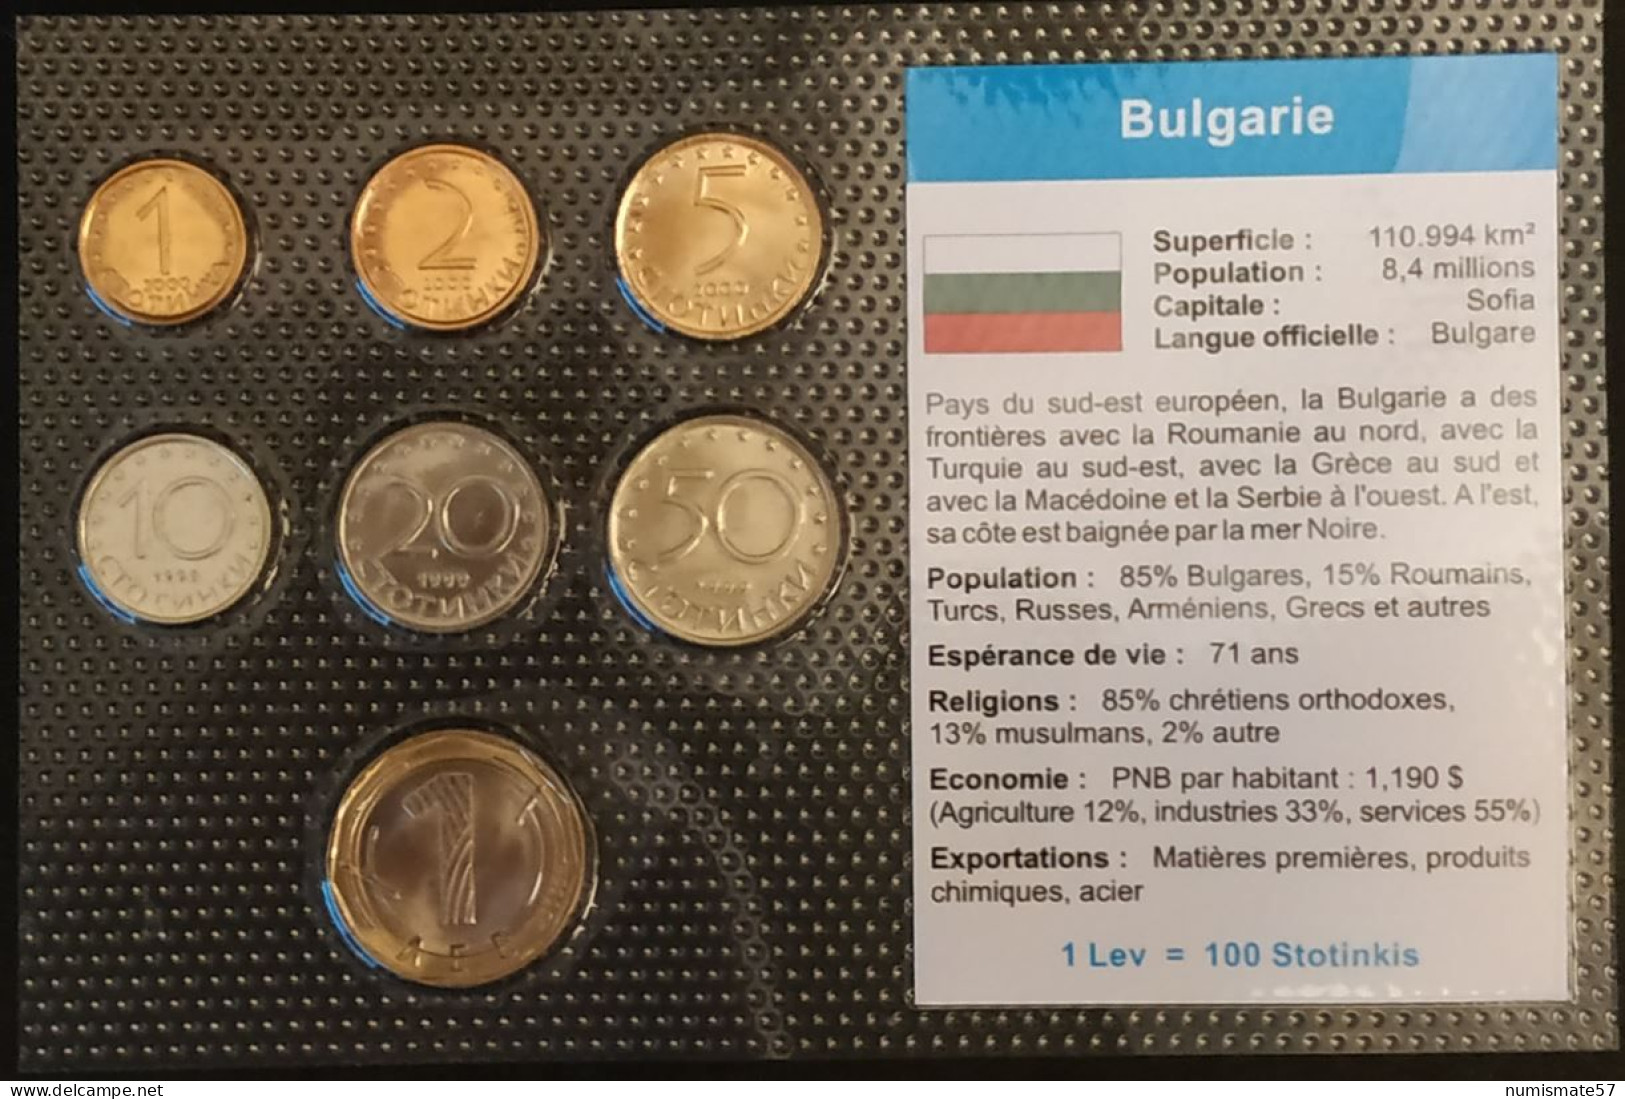 BULGARIE - BULGARIA - SERIE DE 7 PIECES DIFFERENTES - 1 - 2 - 5 - 10 - 20 - 50 STOTINKA - STOTINKI - 1 LEV - Bulgaria